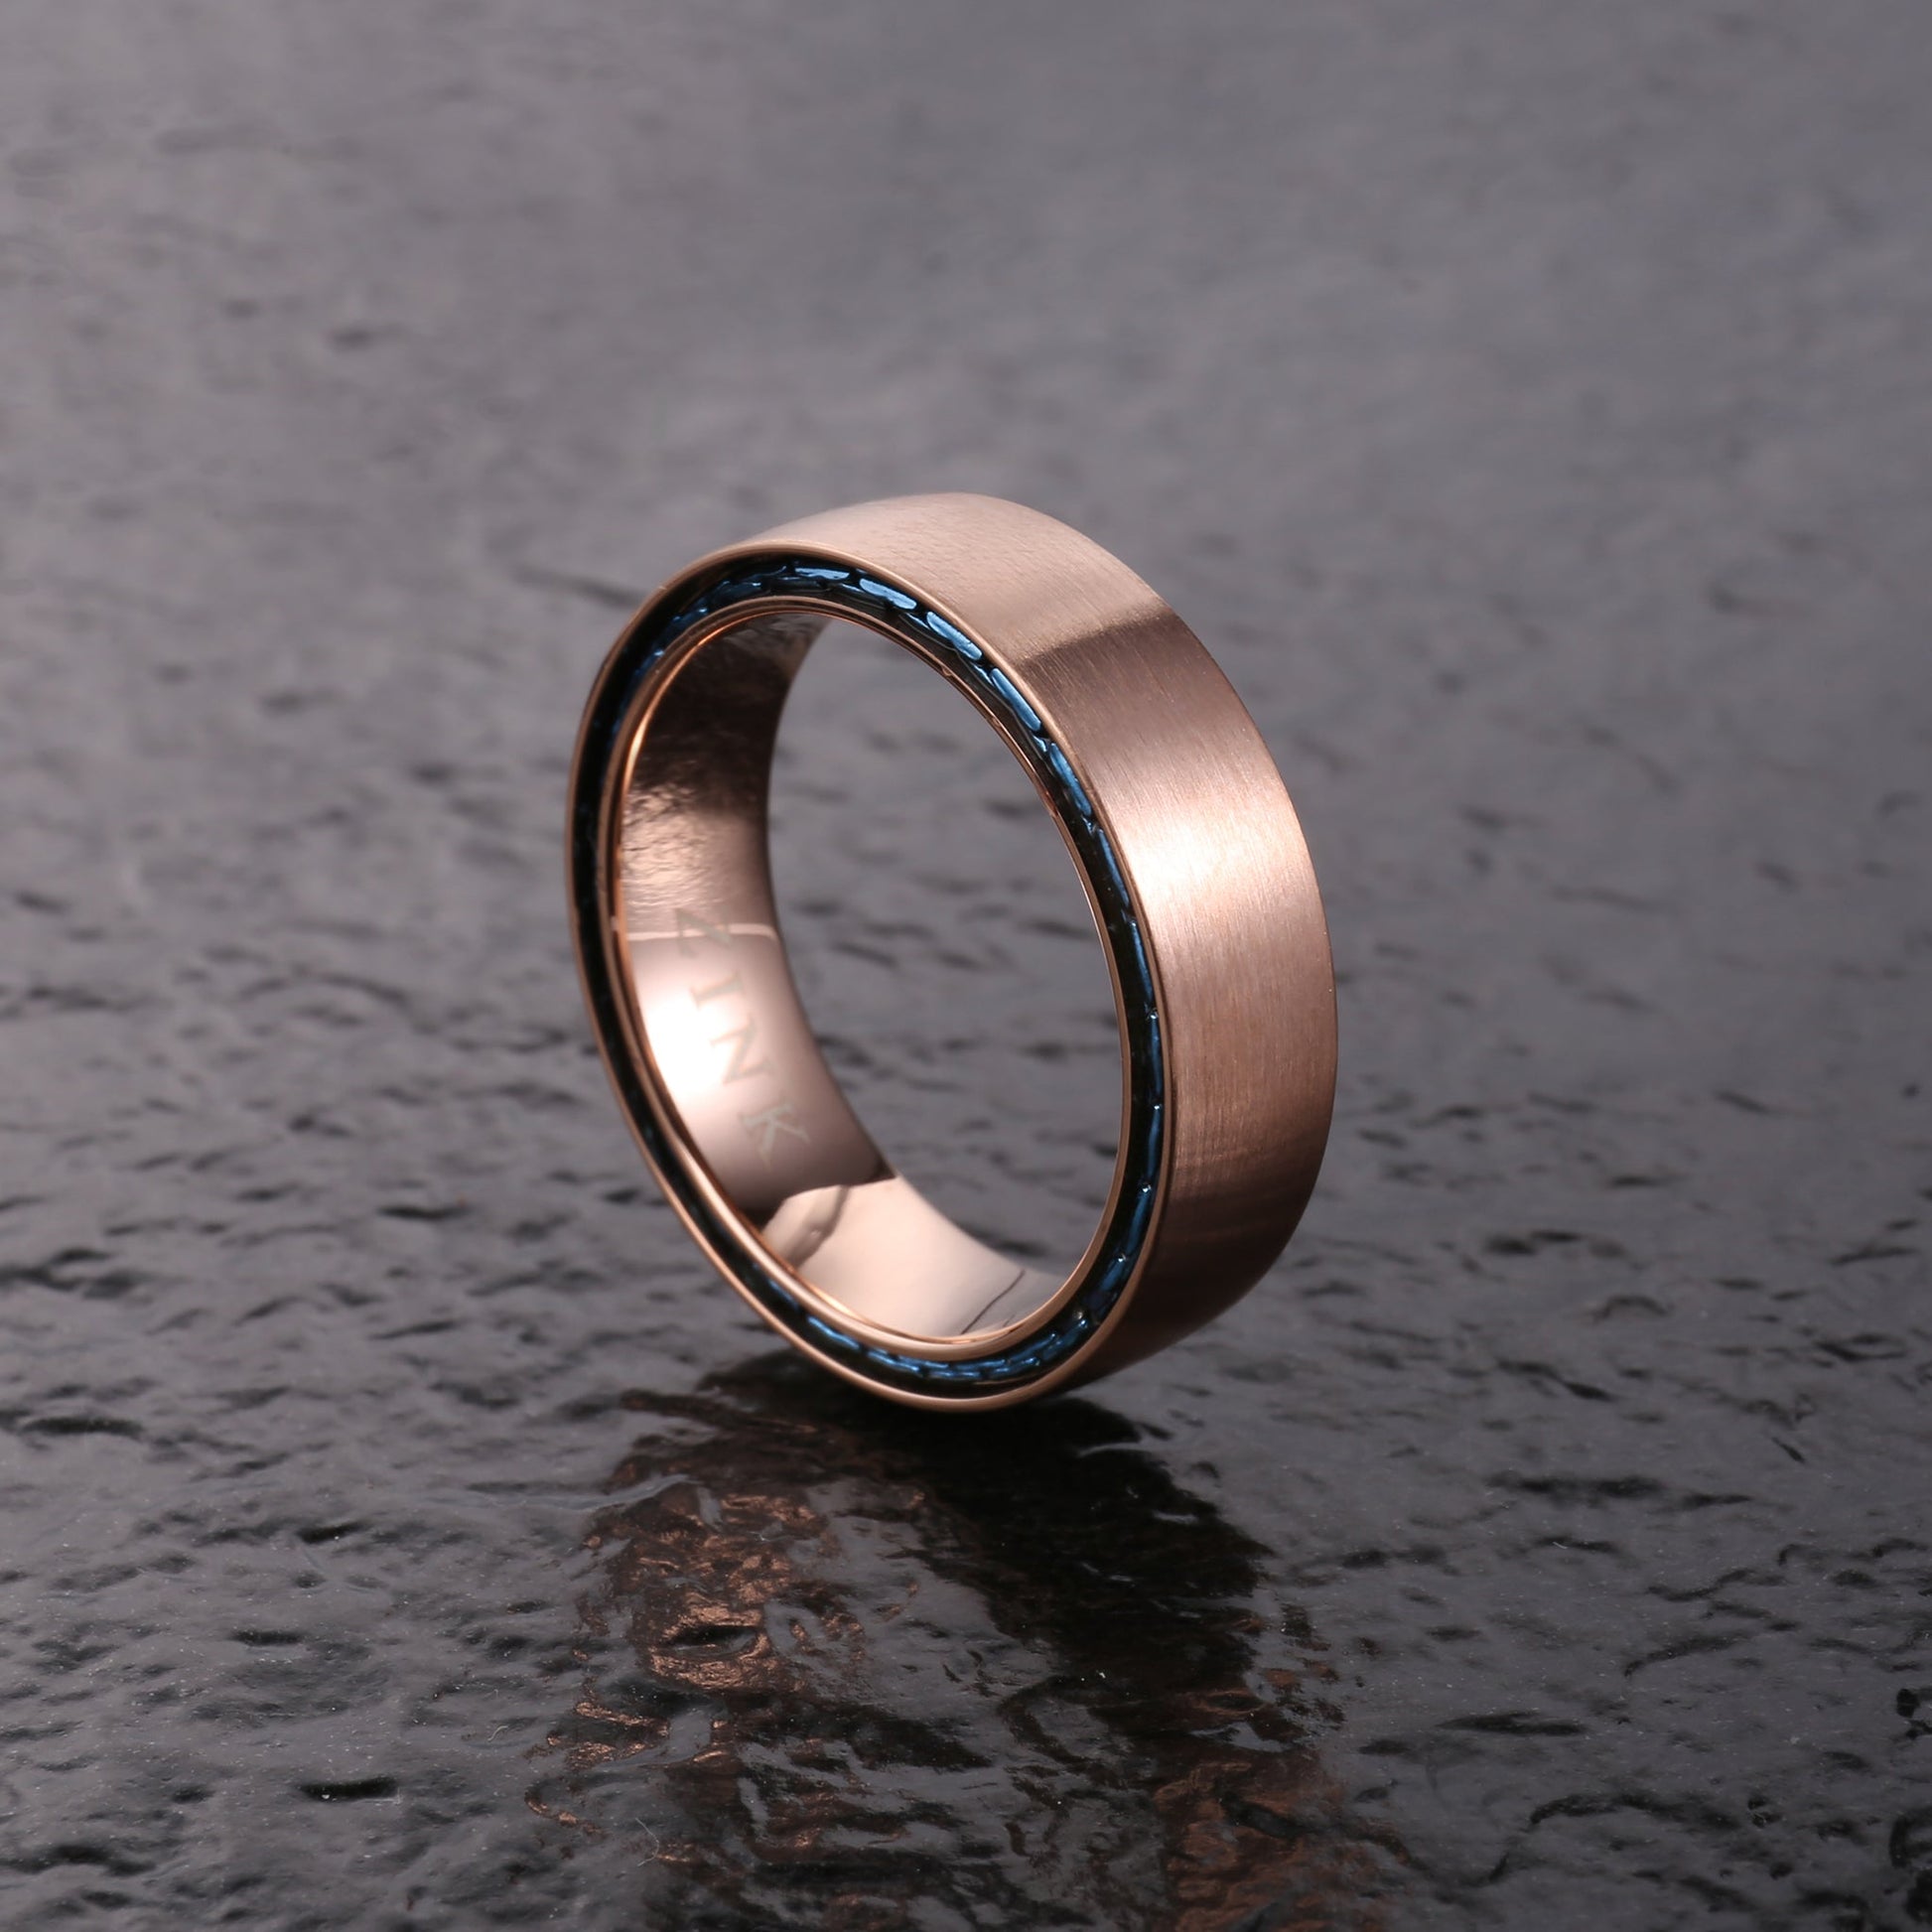 ZJRG03511 ZINK Men's Ring